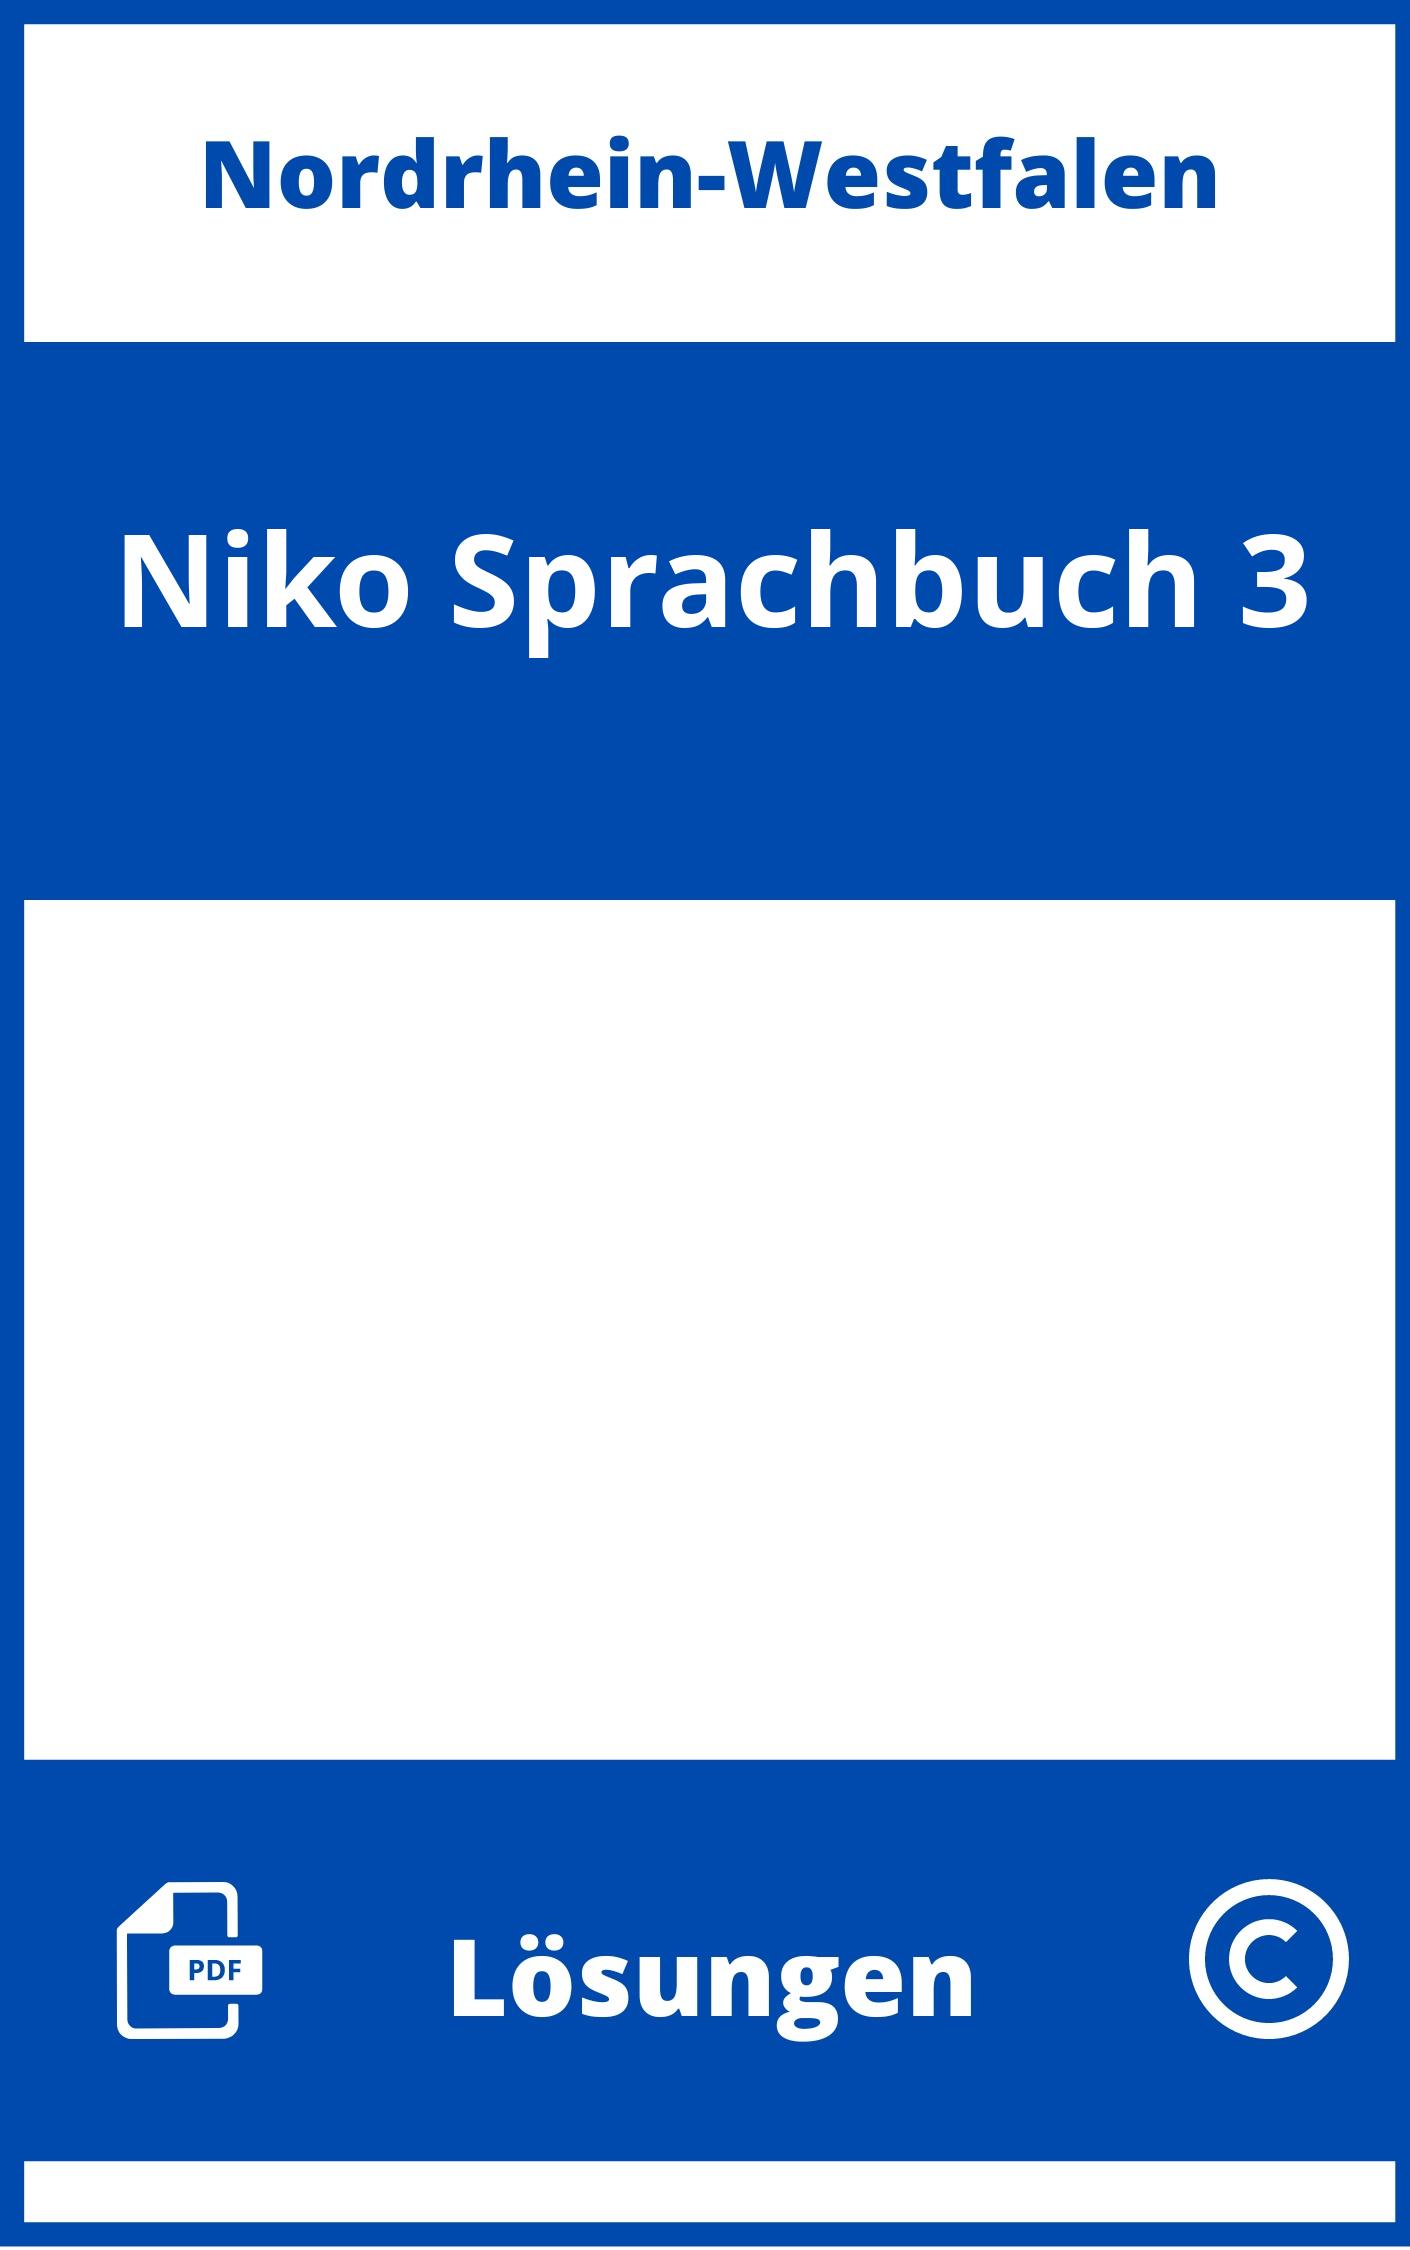 Niko Sprachbuch 3 Lösungen NRW PDF